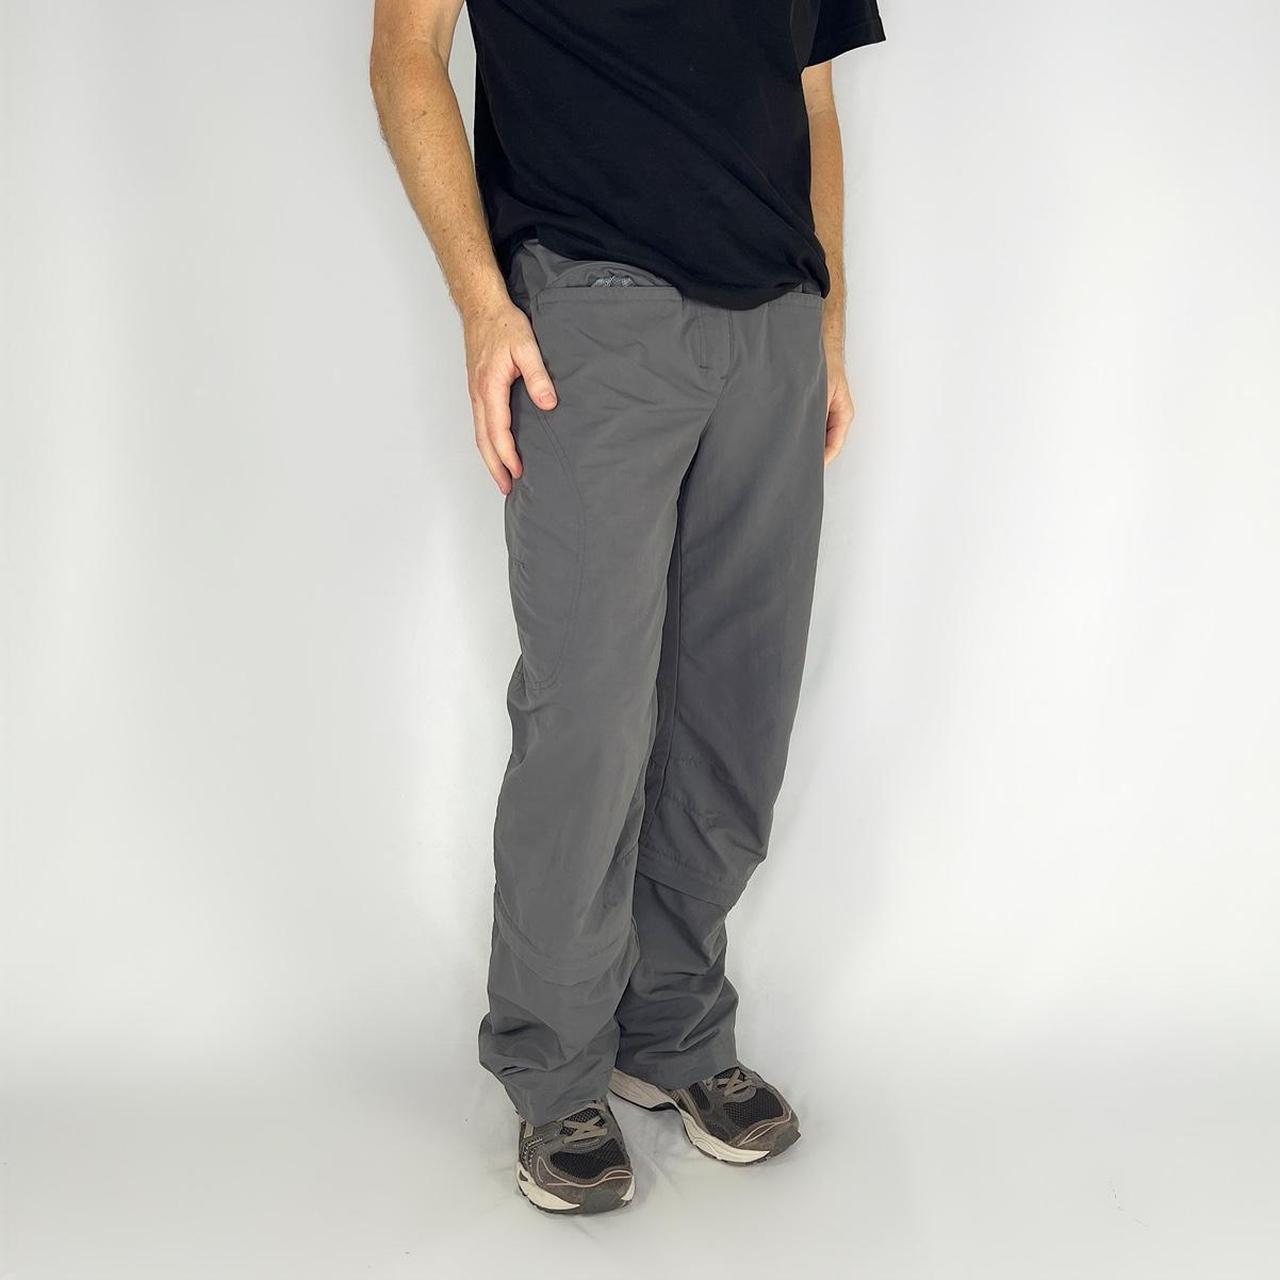 Berghaus Regular Size Pants for Men for sale | eBay